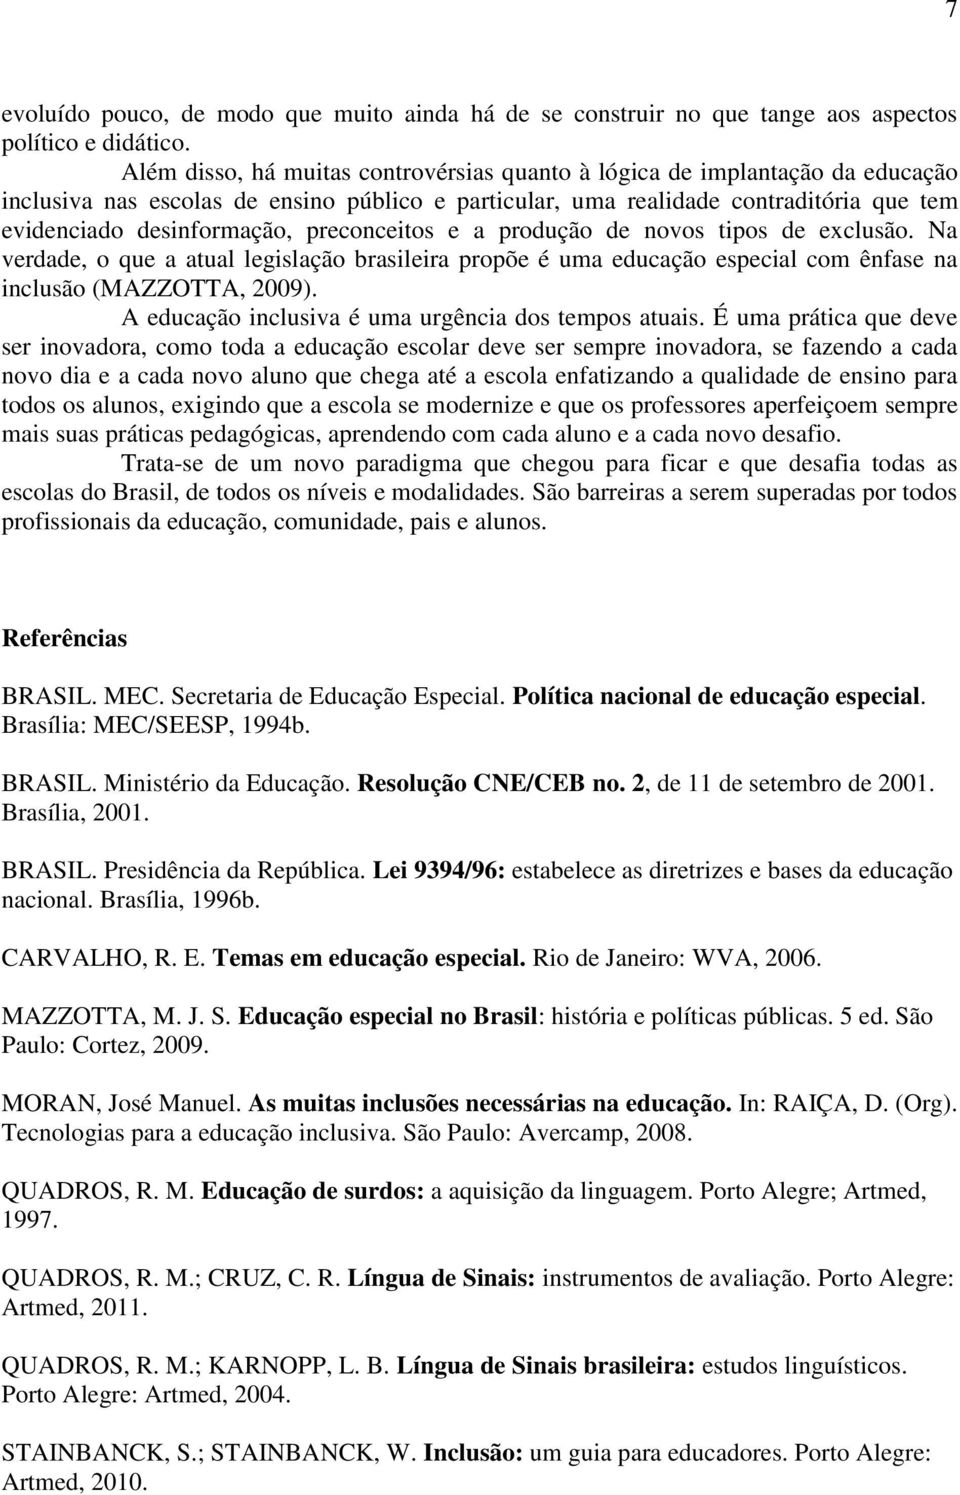 preconceitos e a produção de novos tipos de exclusão. Na verdade, o que a atual legislação brasileira propõe é uma educação especial com ênfase na inclusão (MAZZOTTA, 2009).